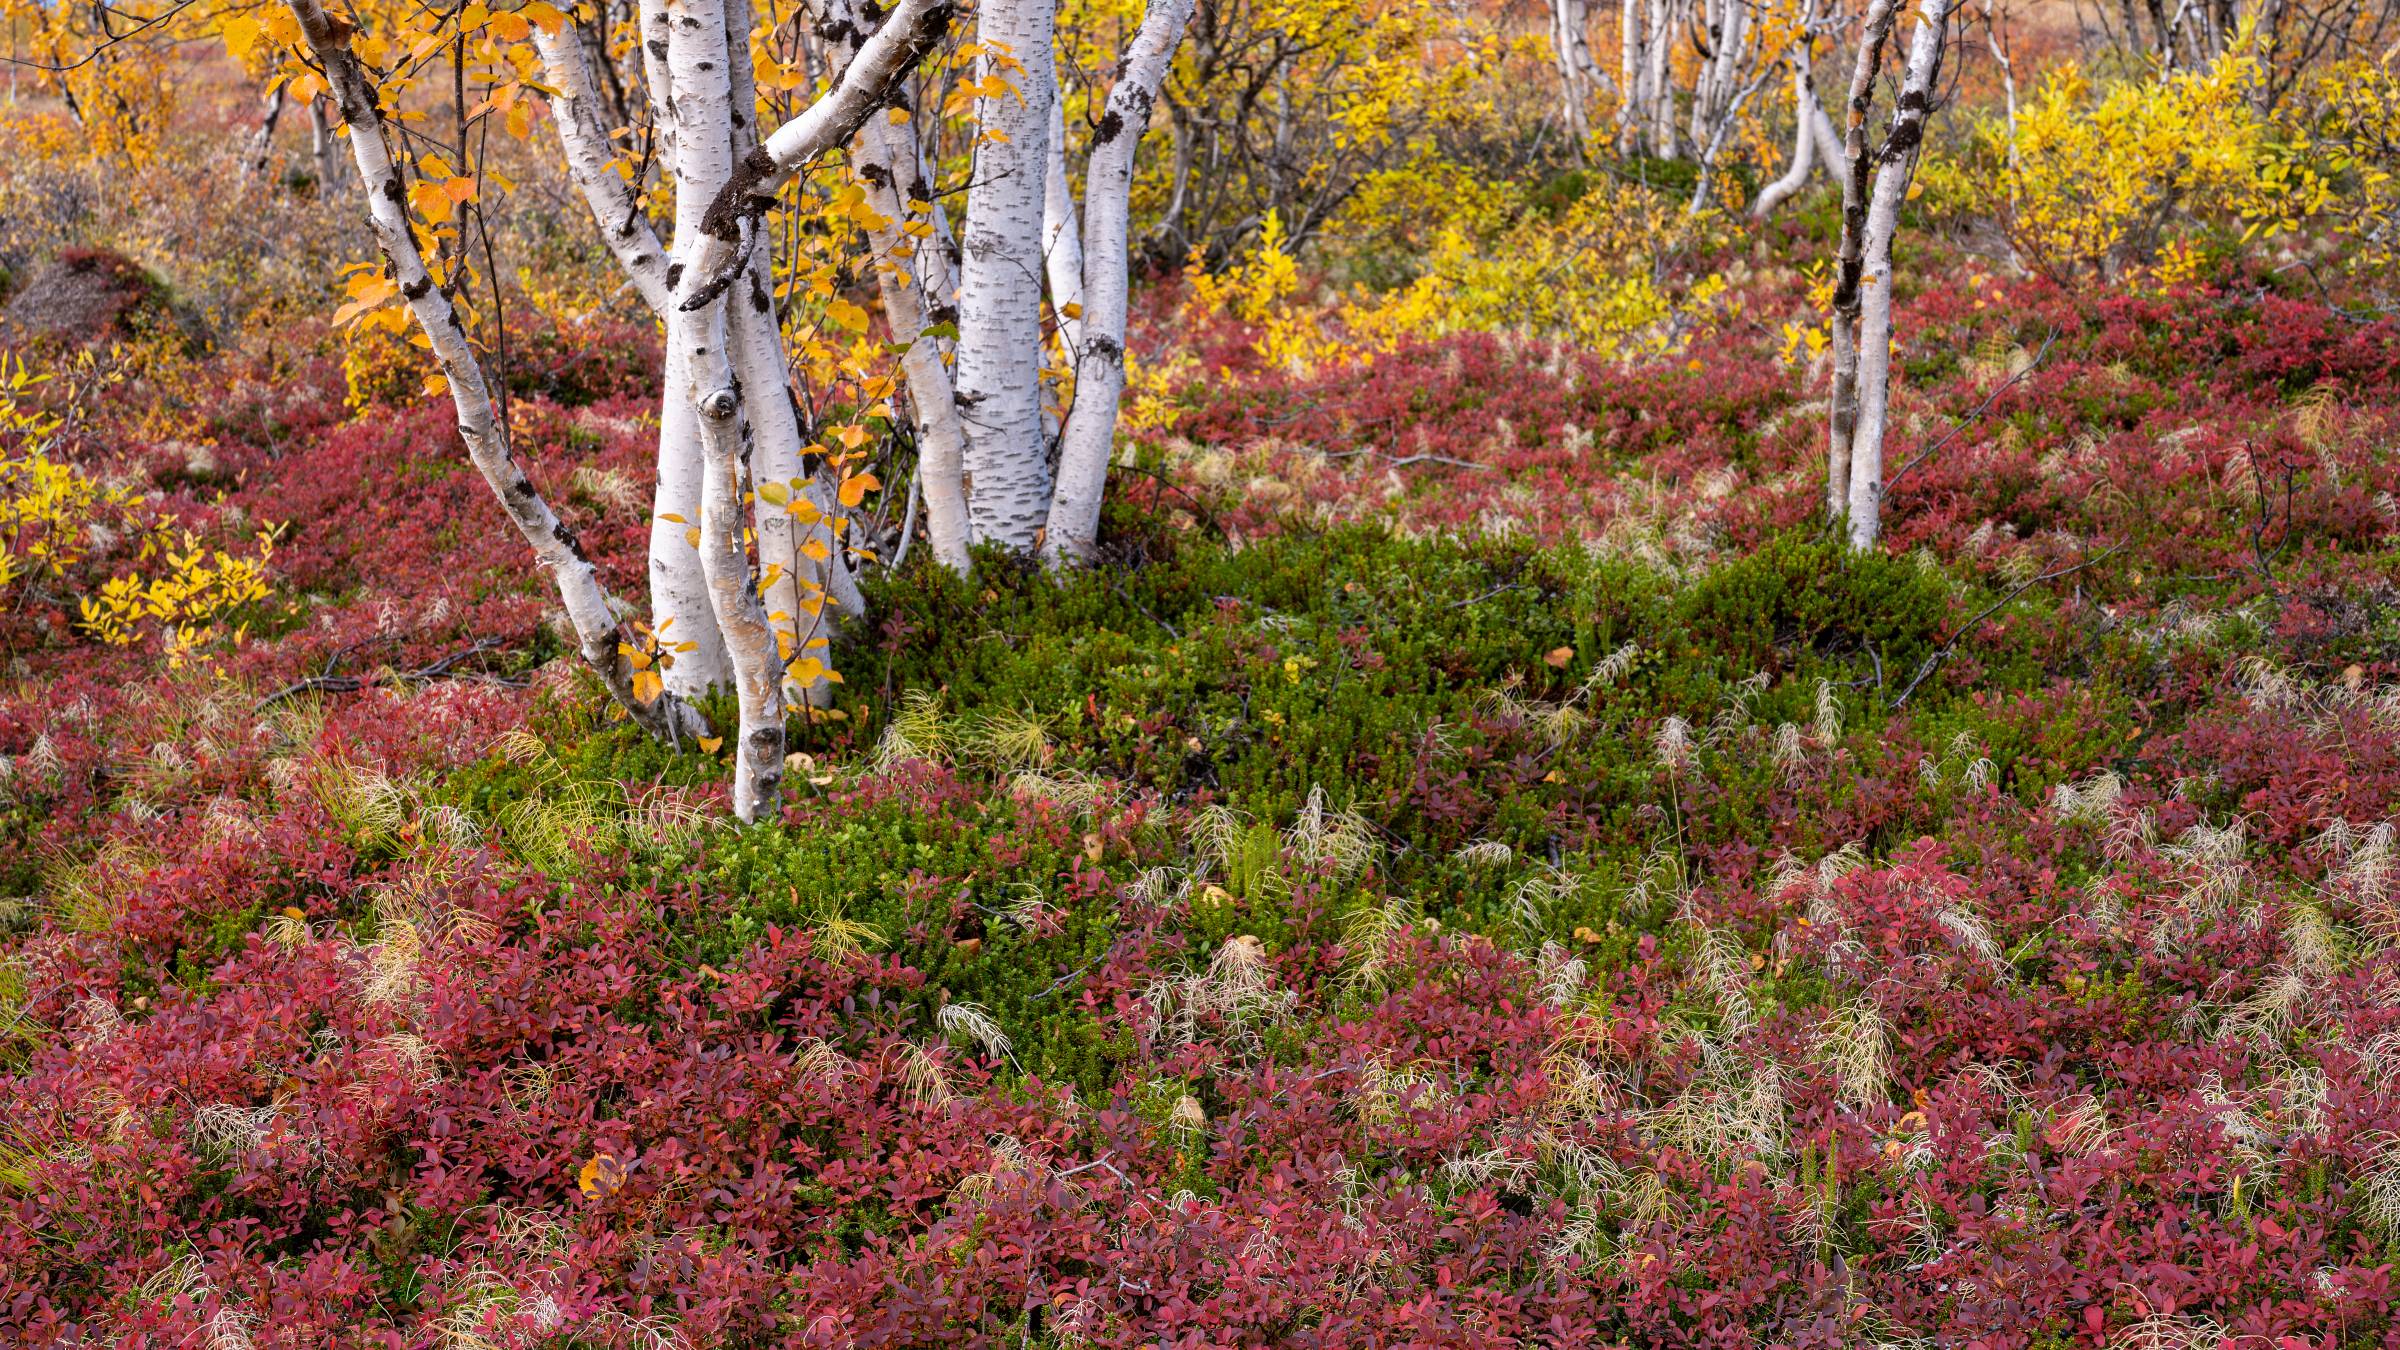 Lappland birches